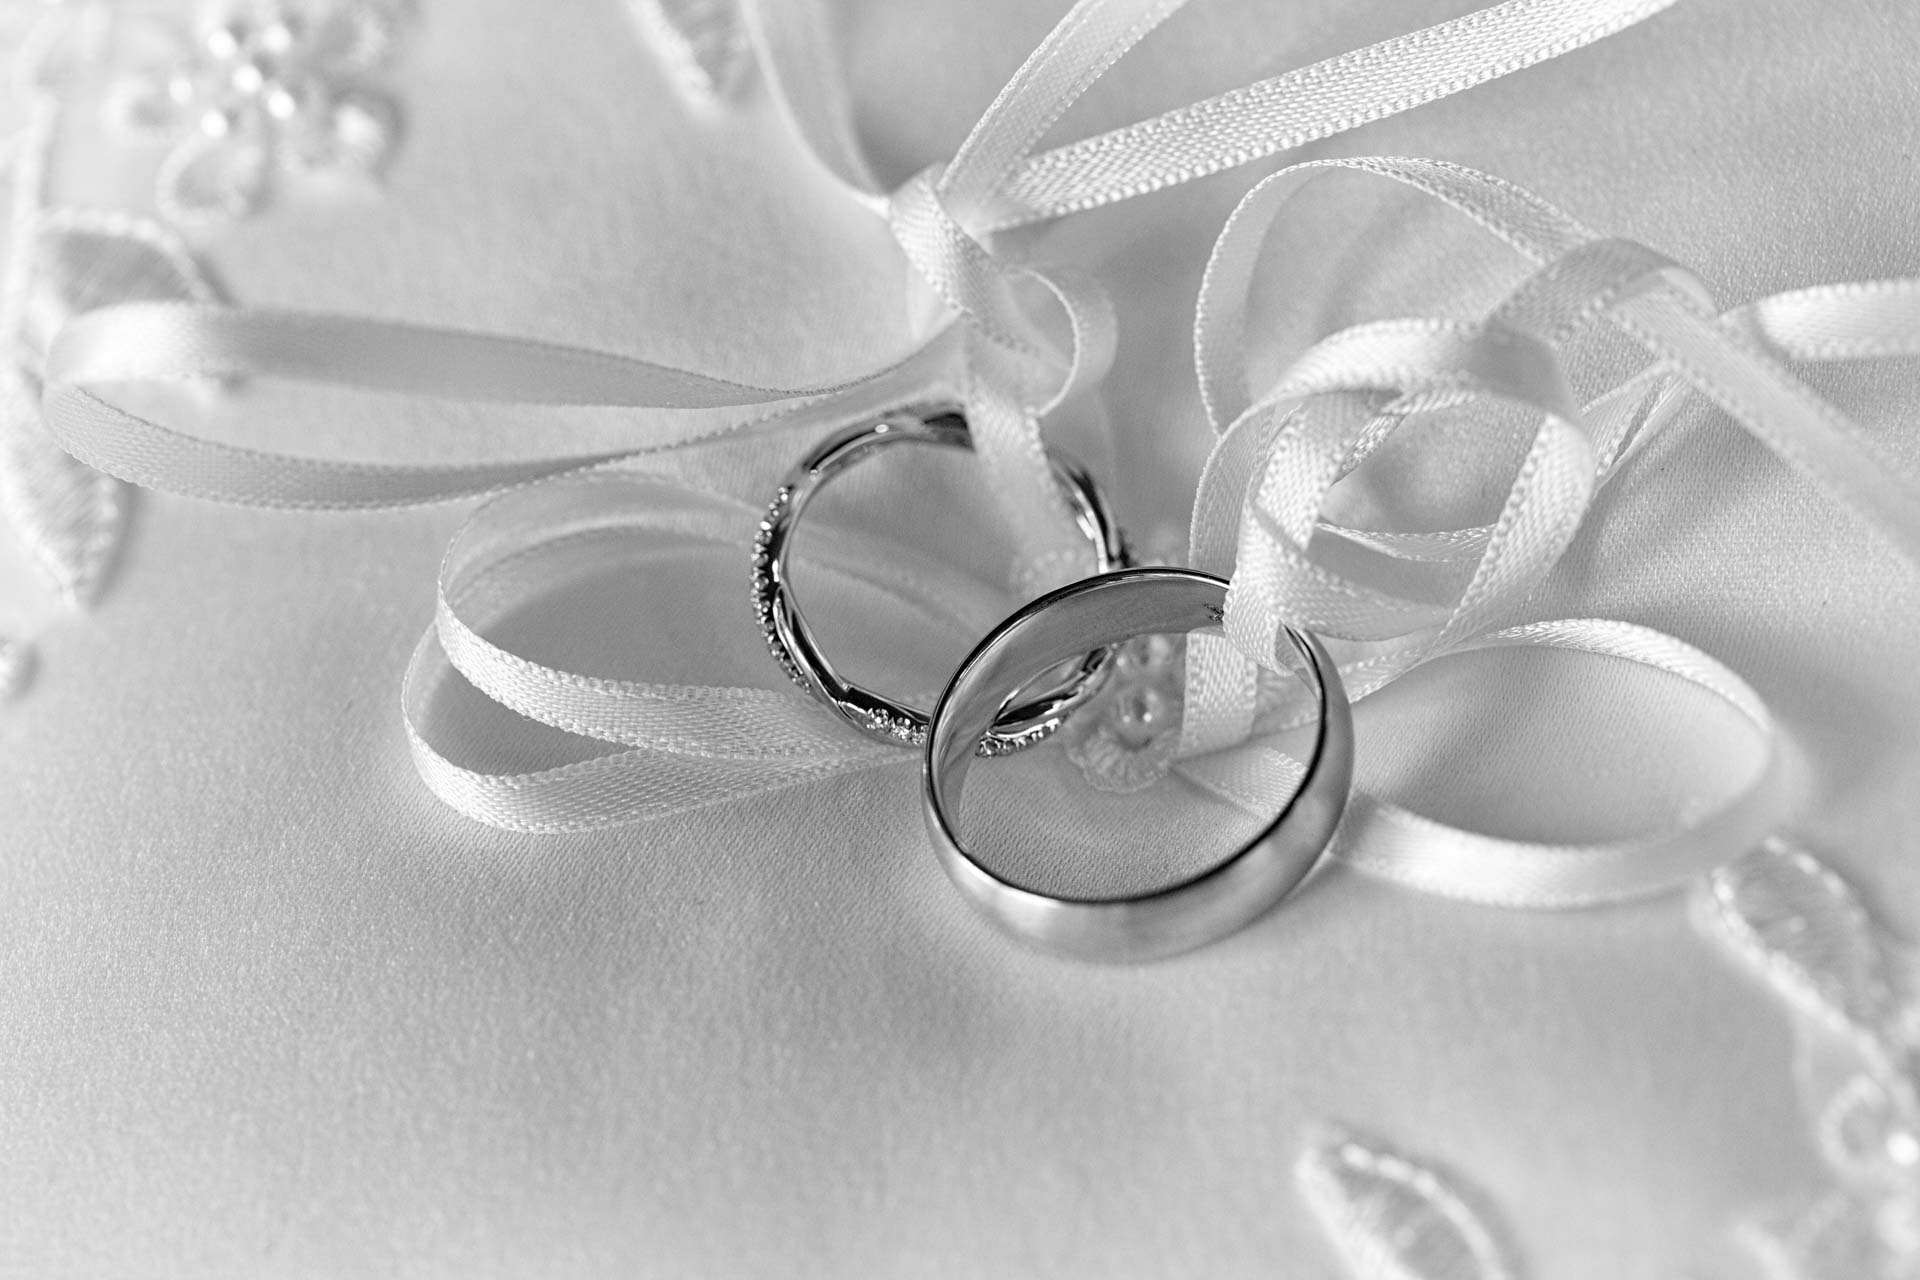 Wedding rings on a white satin pillow
